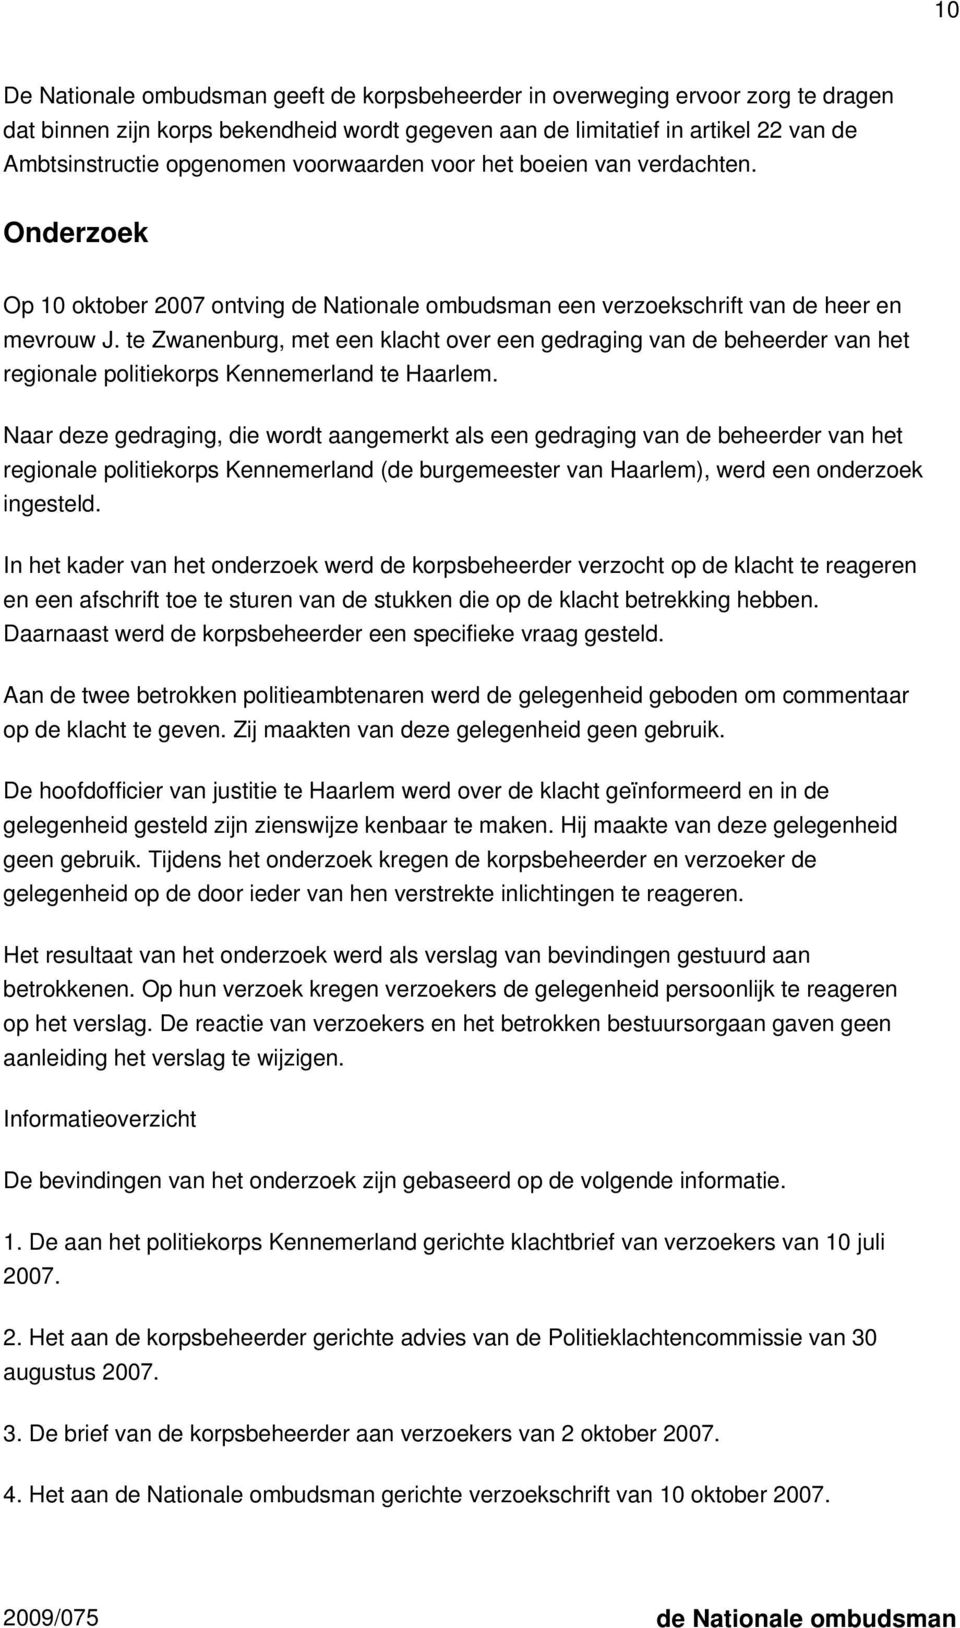 te Zwanenburg, met een klacht over een gedraging van de beheerder van het regionale politiekorps Kennemerland te Haarlem.